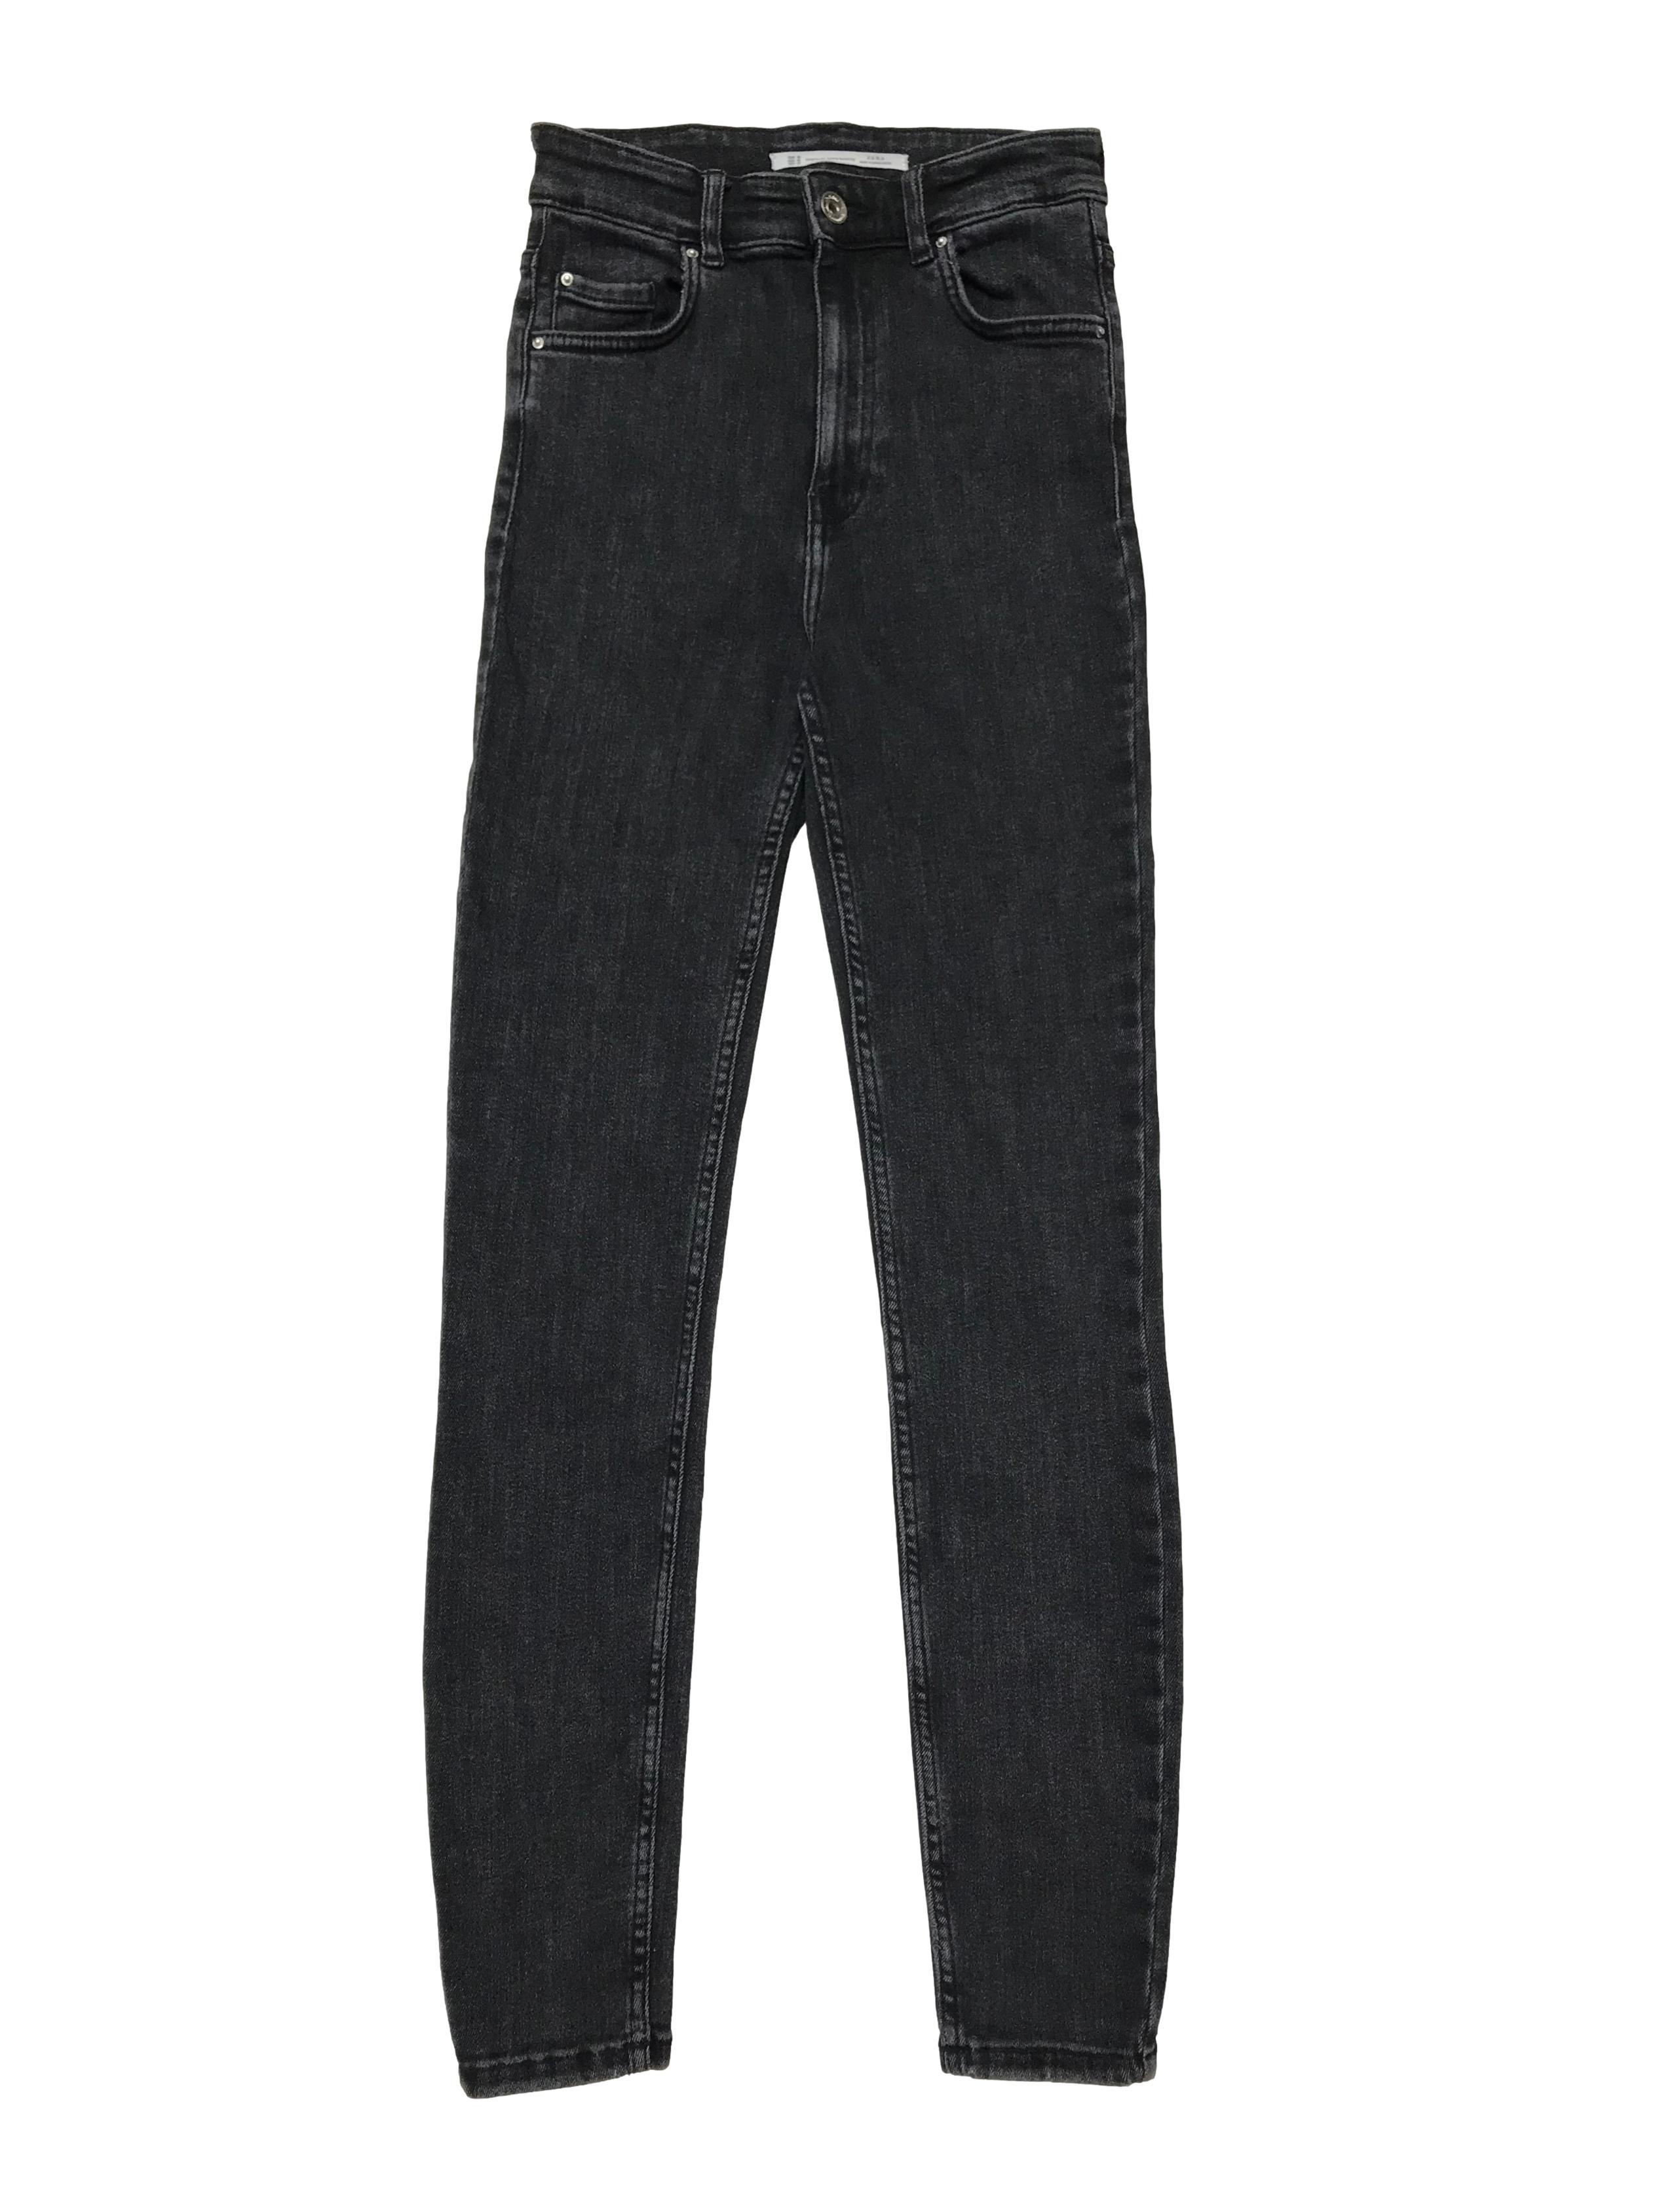 Skinny jean Zara cintura alta, negro efecto lavado. Cintura 60cm sin estirar Largo 98cm